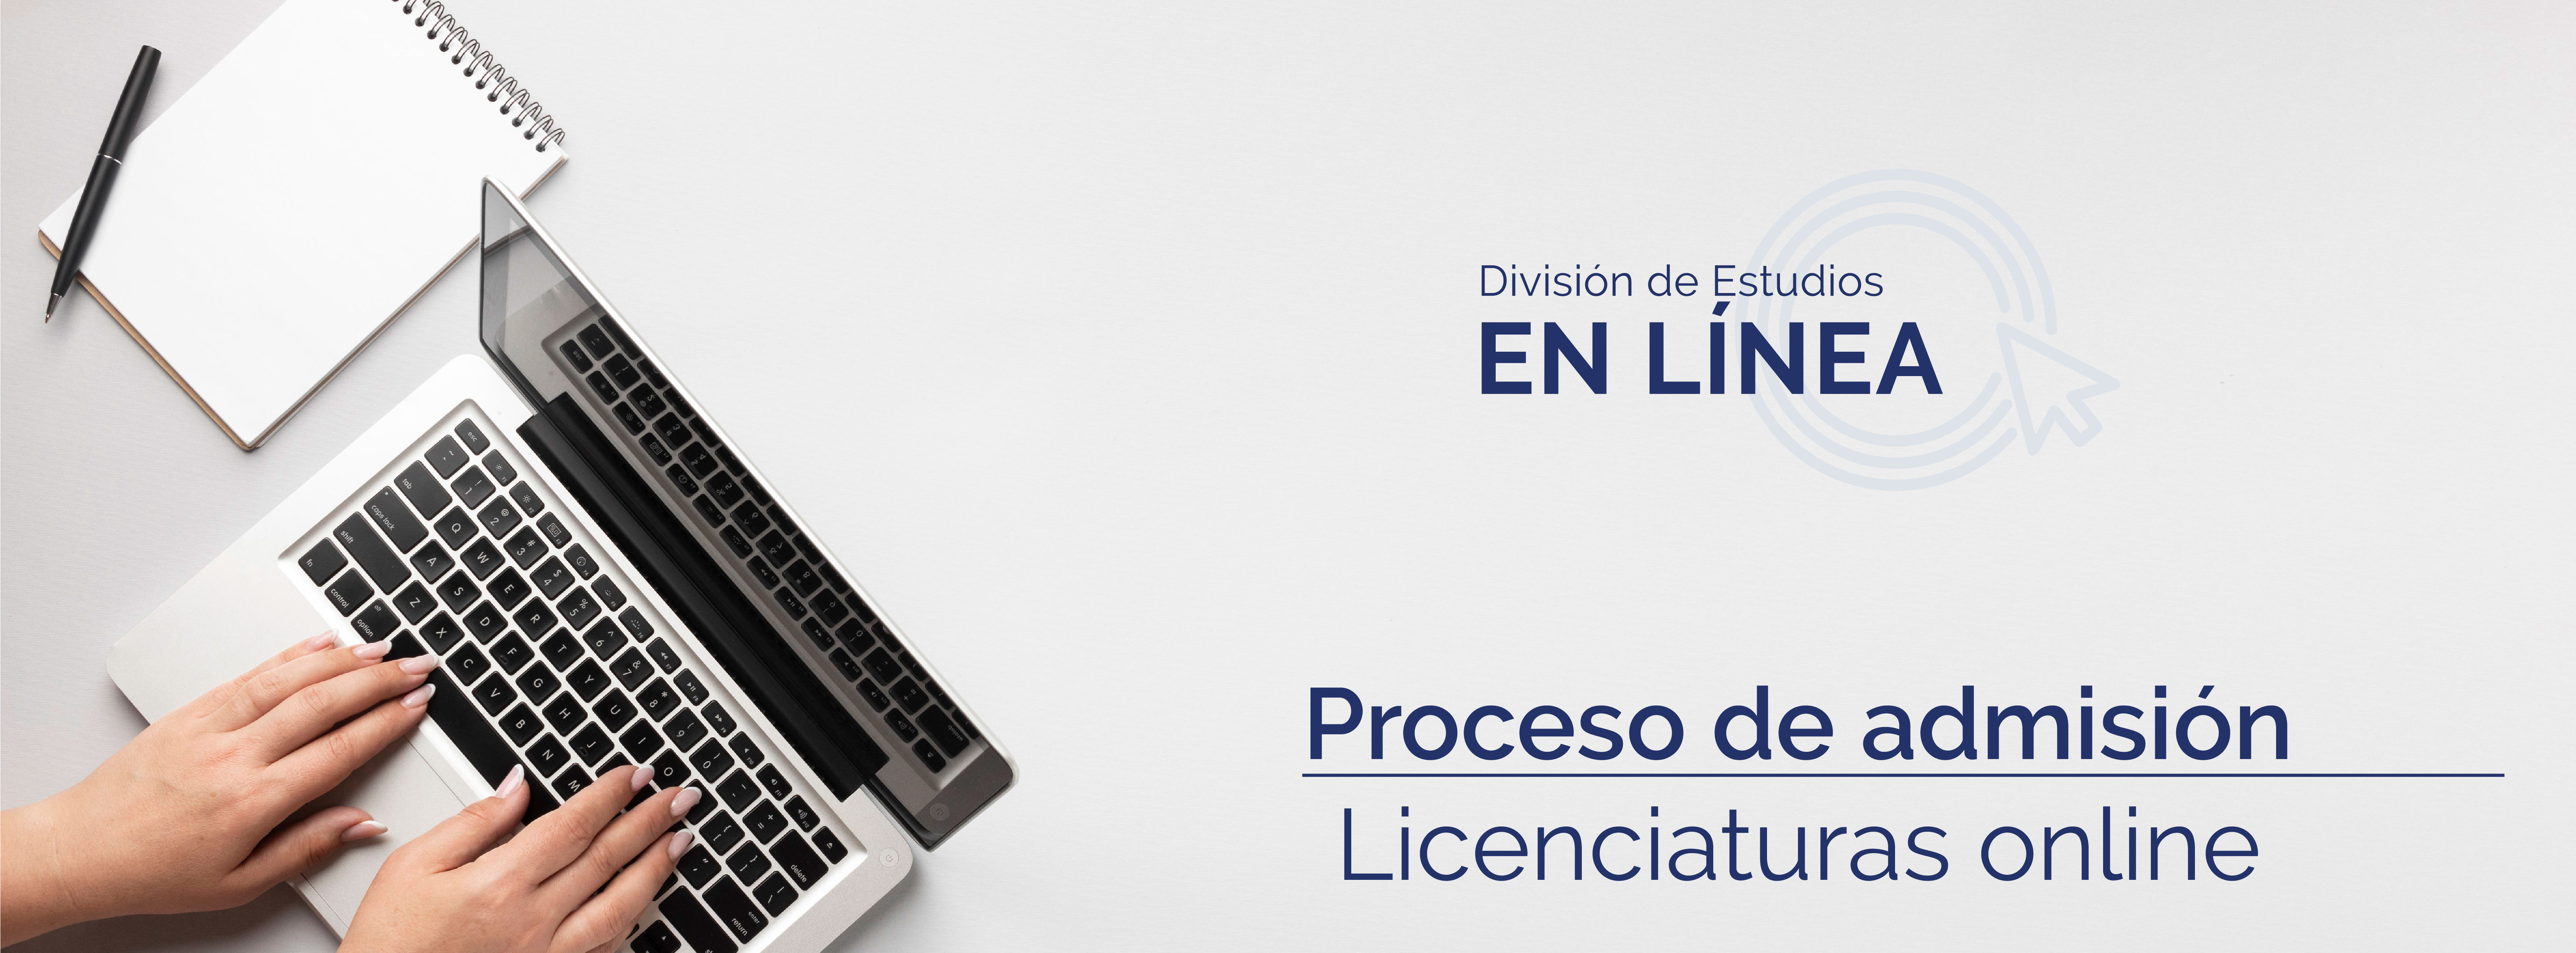 cessa_proceso_admision_licenciatura_online_header